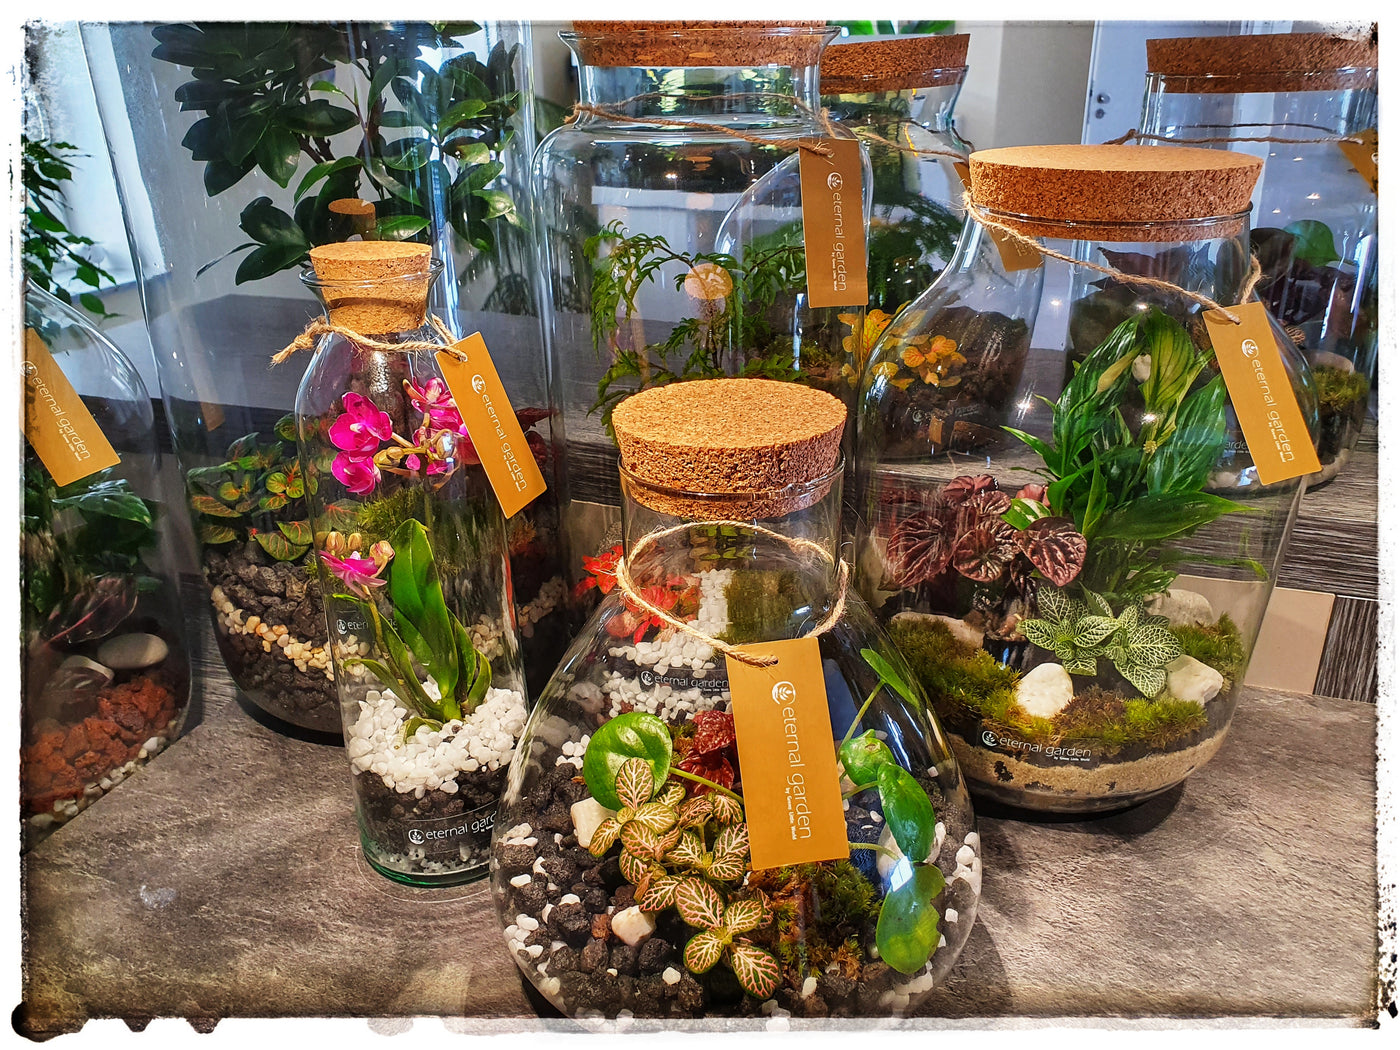 Fertige Flaschengärten mit verschiedenen Bepflanzungen von Minipflanzen und Bodensubstrat, wie Kies, Lavasplitt, Bruchstein.